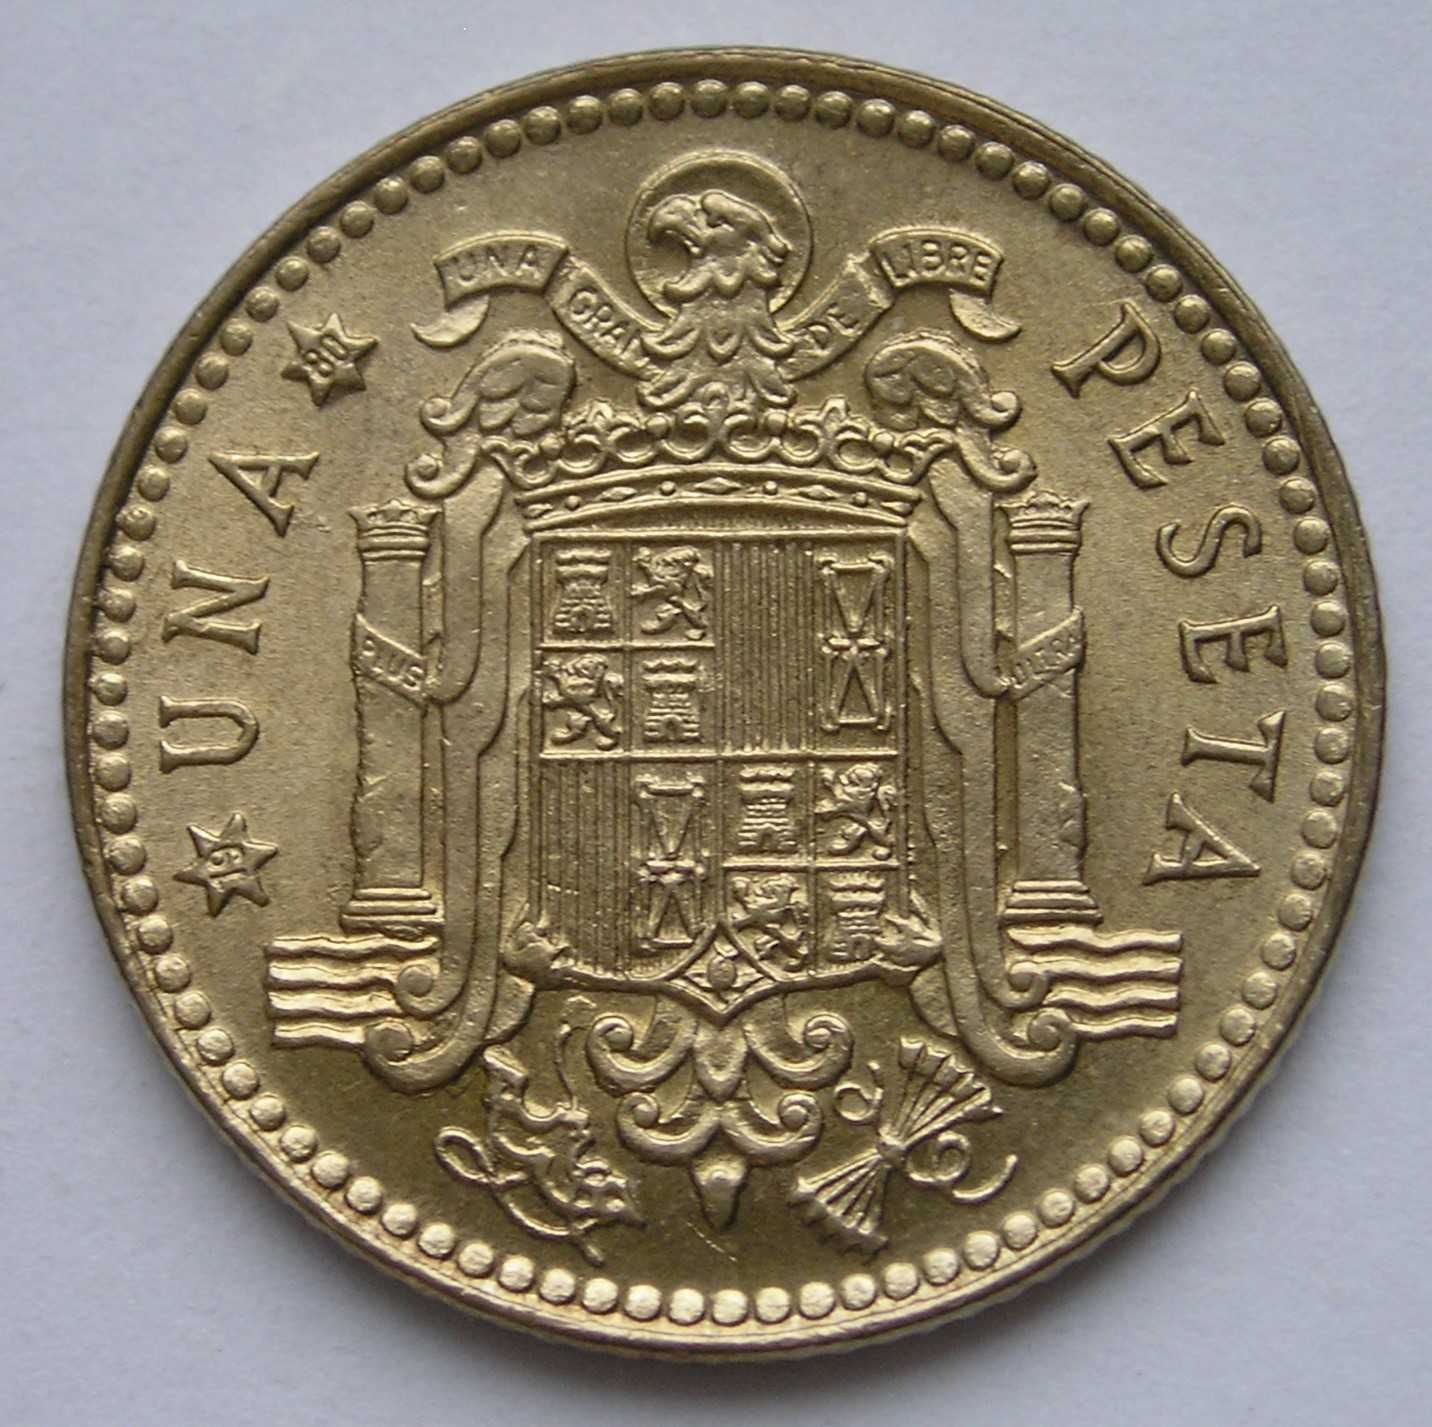 Hiszpania 1 peseta 1975 - król Juan Carlos - stan 1/2